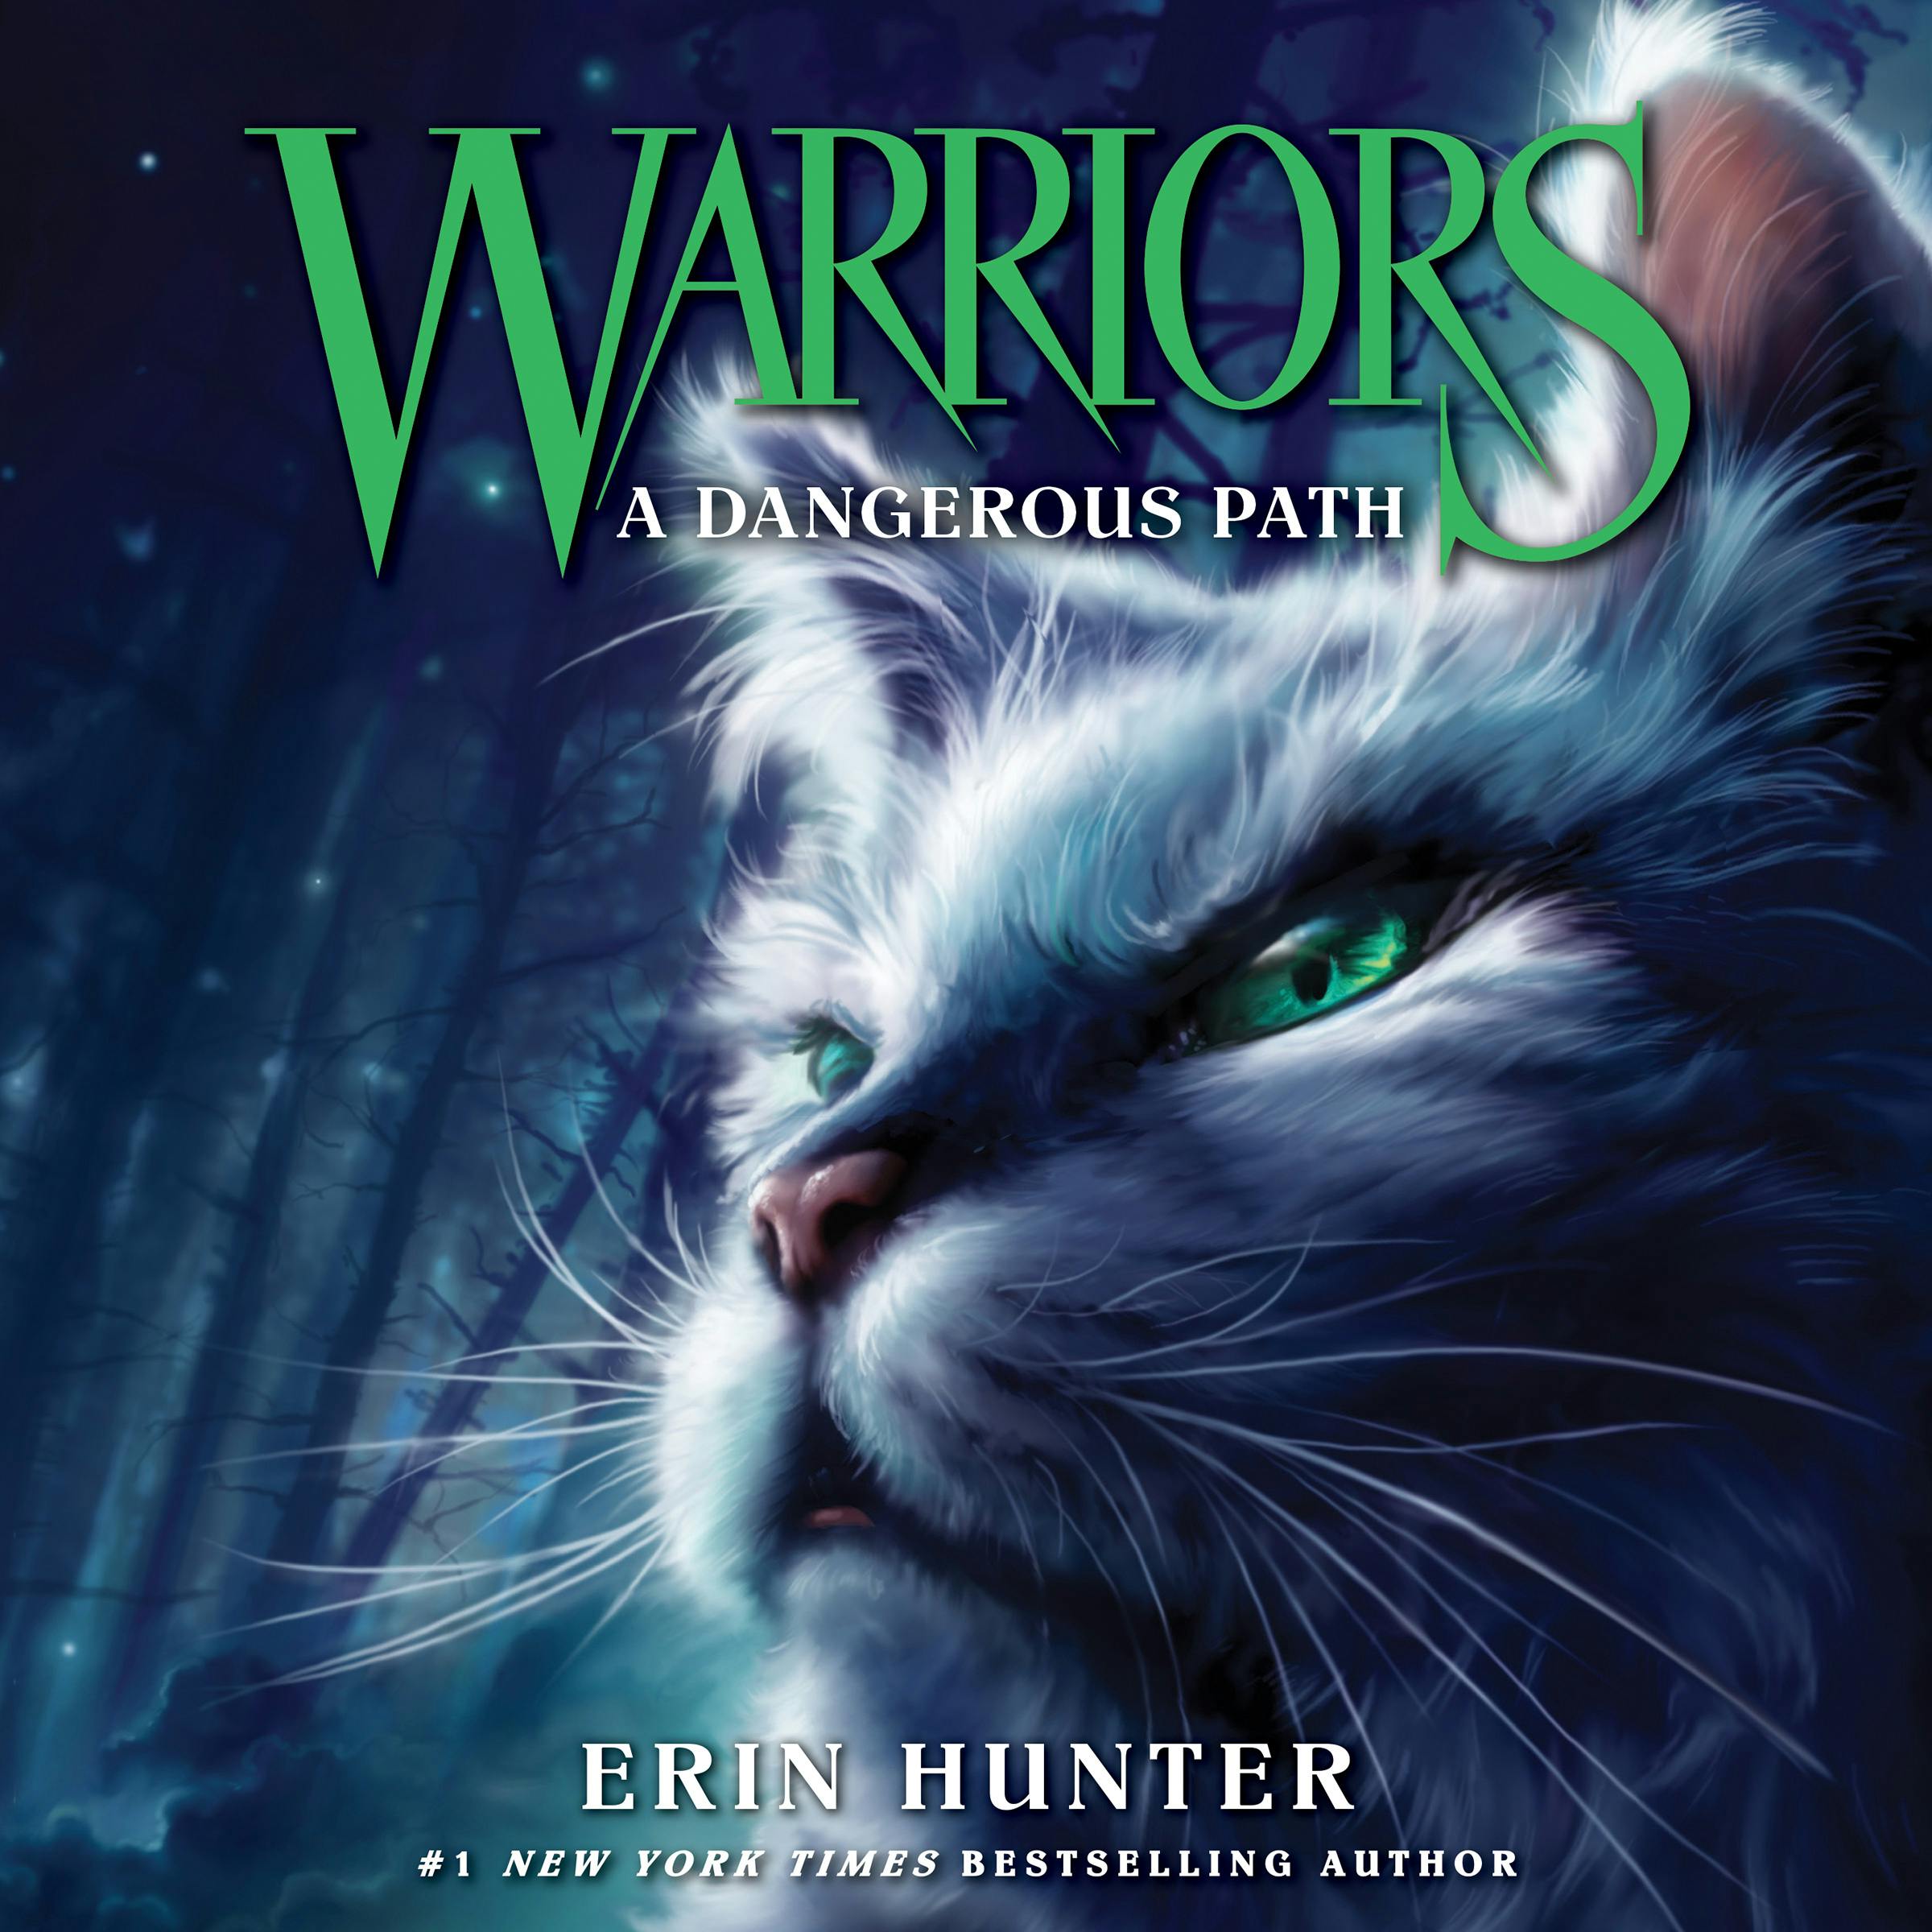 Warriors #5: A Dangerous Path - Erin Hunter